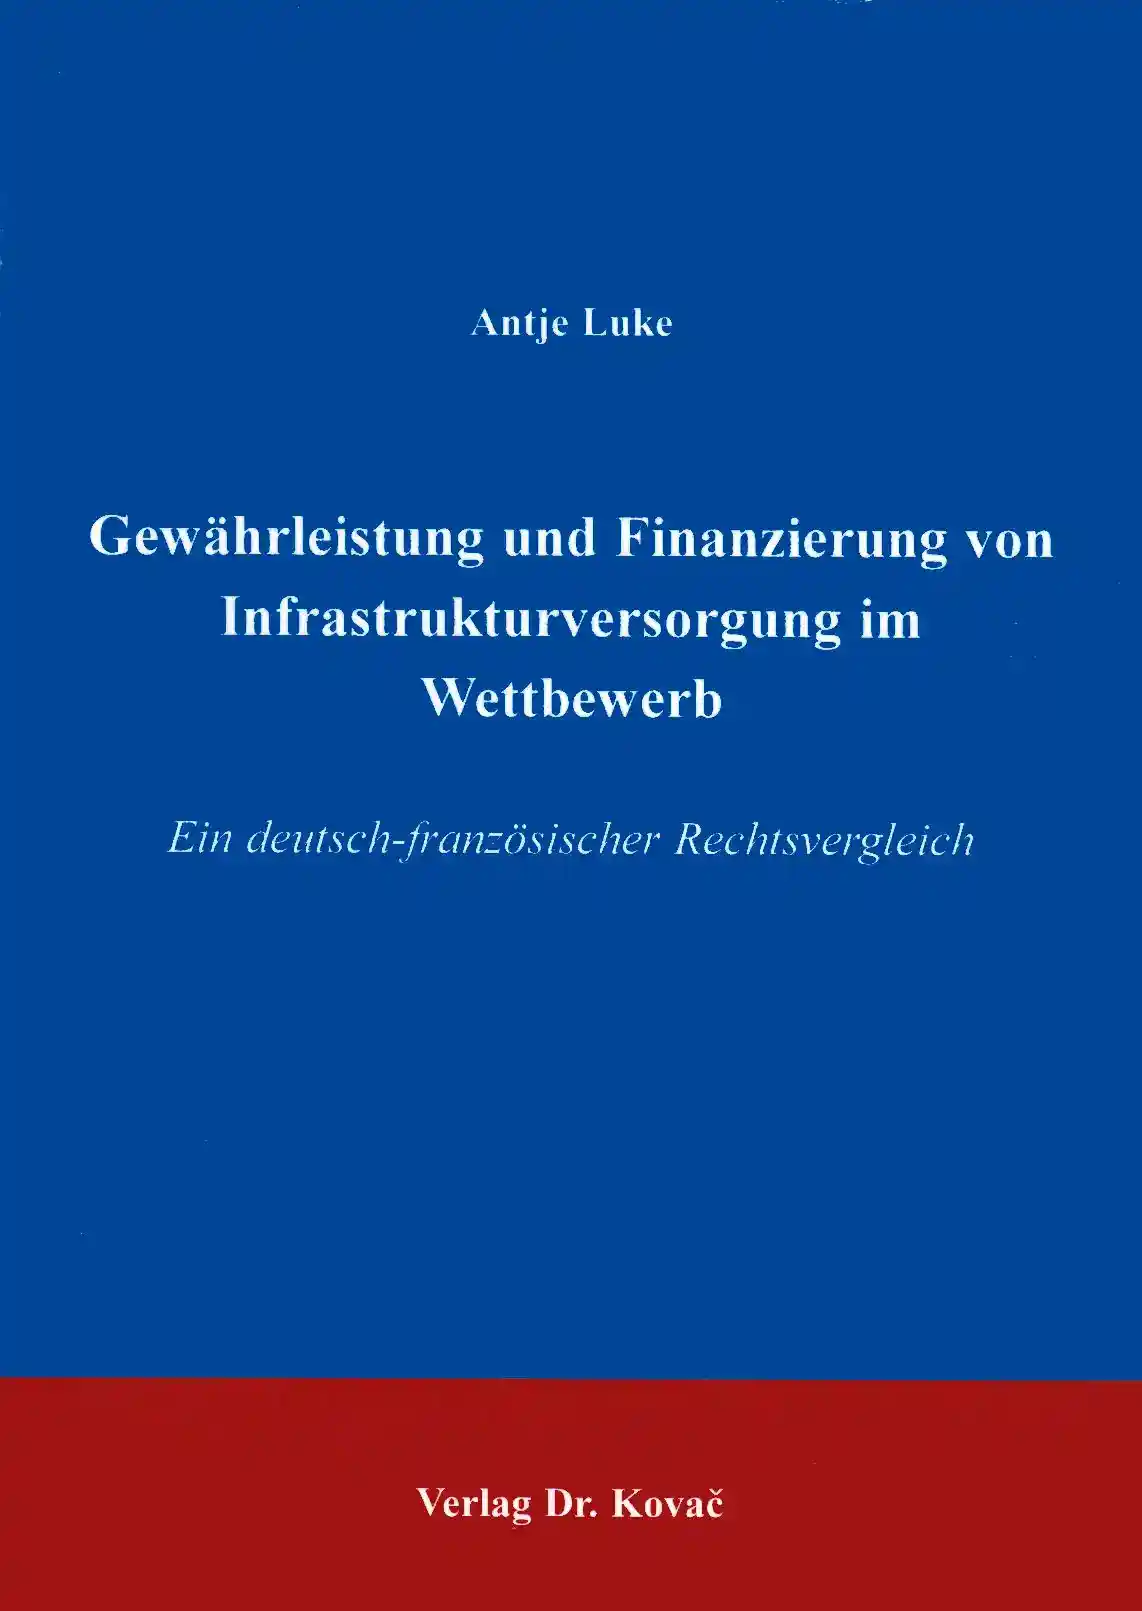 Dissertation: Gewährleistung und Finanzierung von Infrastrukturversorgung im Wettbewerb